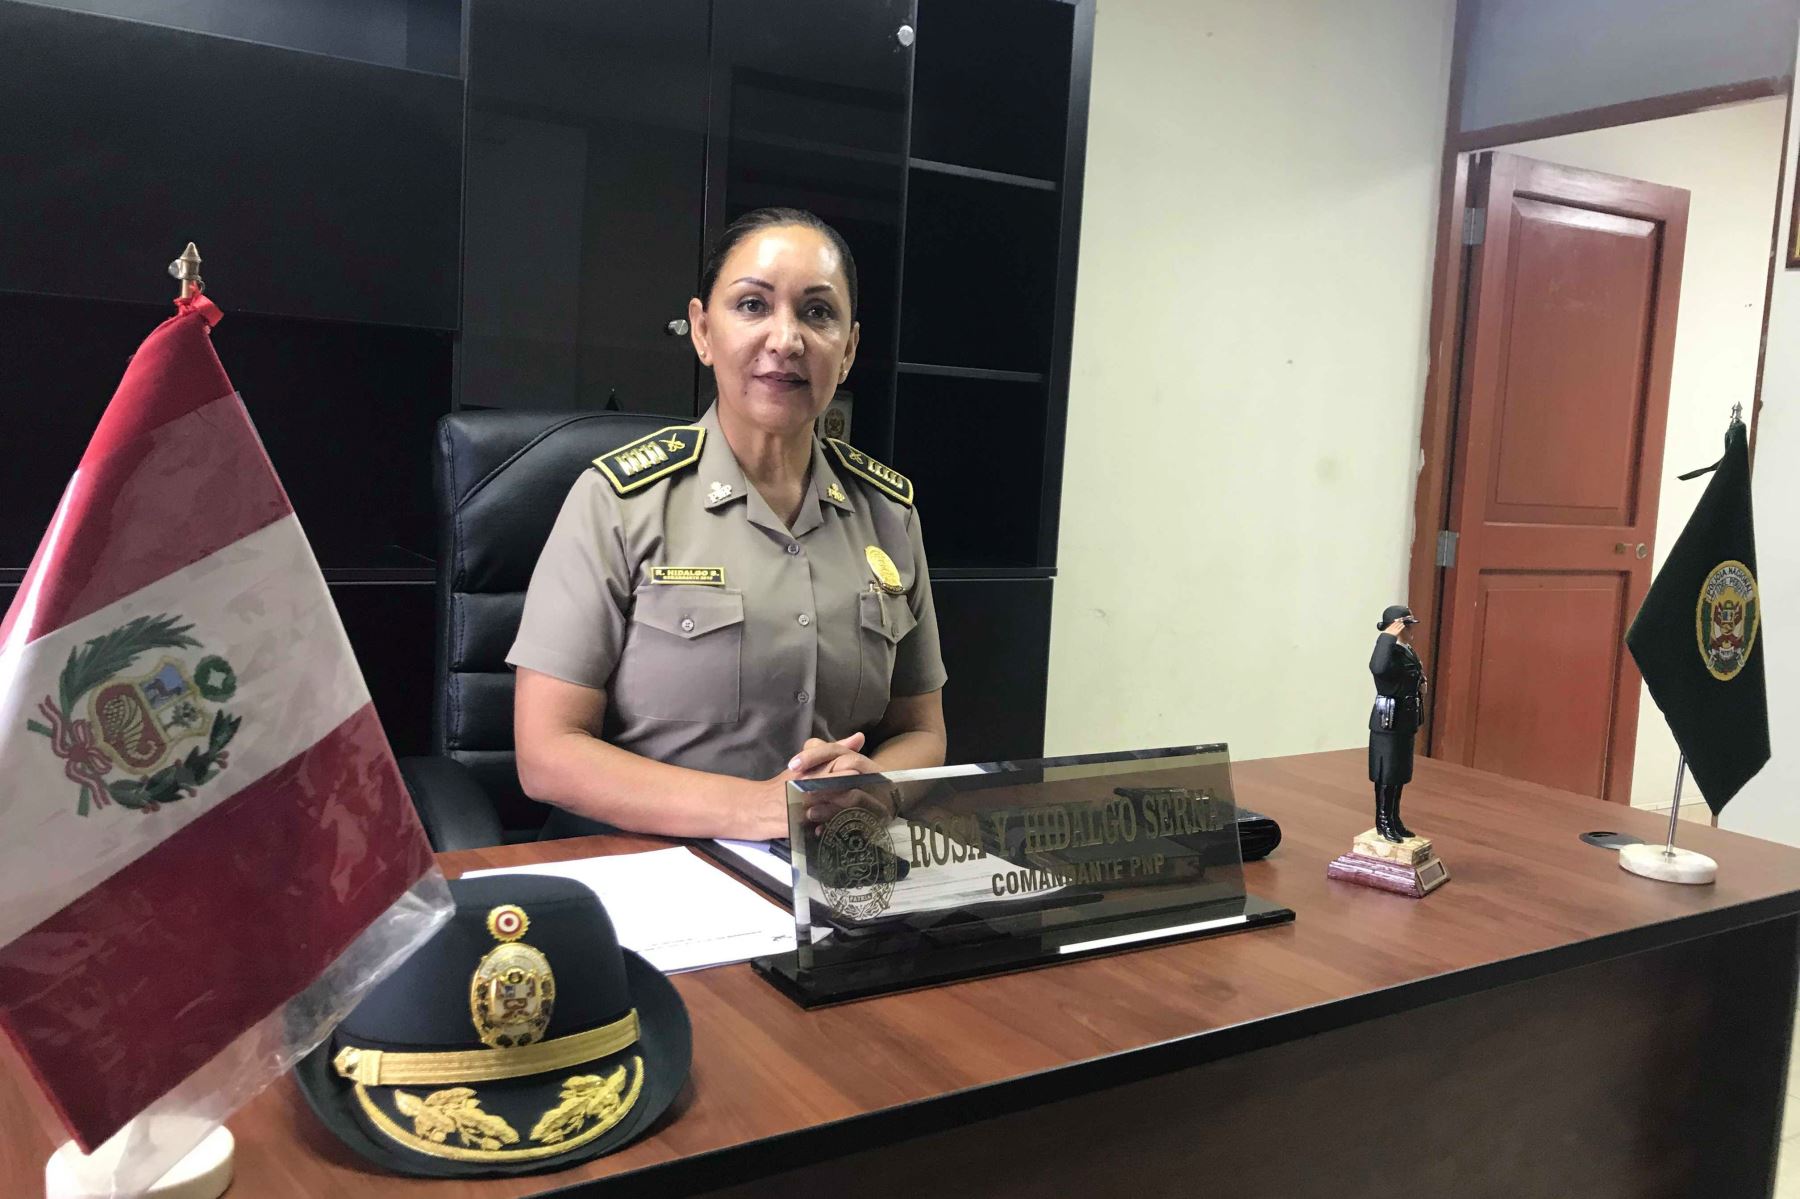 La comandante PNP Rosa Yuli Hidalgo Serna tiene a su cargo la conducción de la comisaría de Huarmey, región Áncash. Foto: ANDINA/Gonzalo Horna